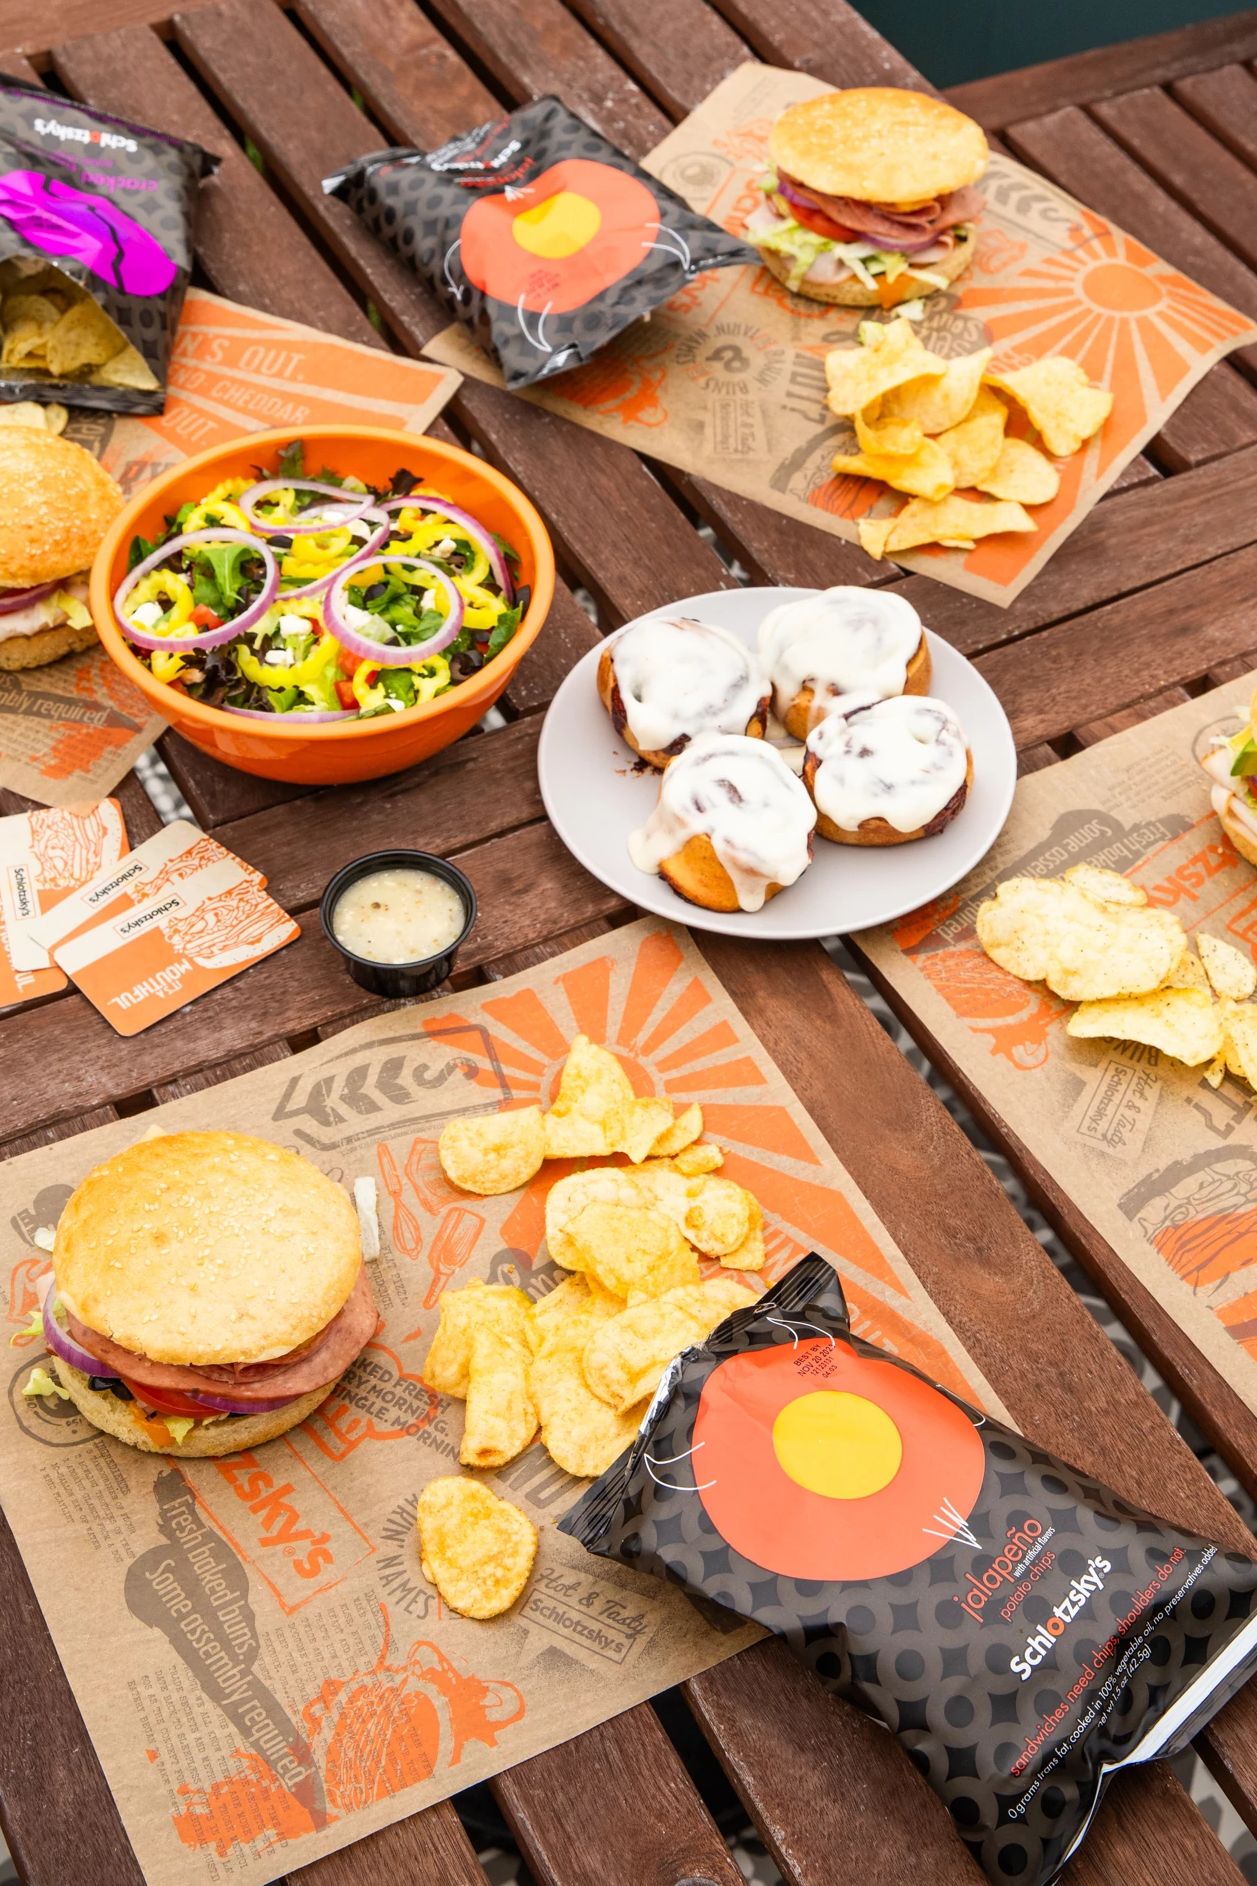 Bocadillos Schlotzsky's, papas fritas y postre en una mesa de pícnic